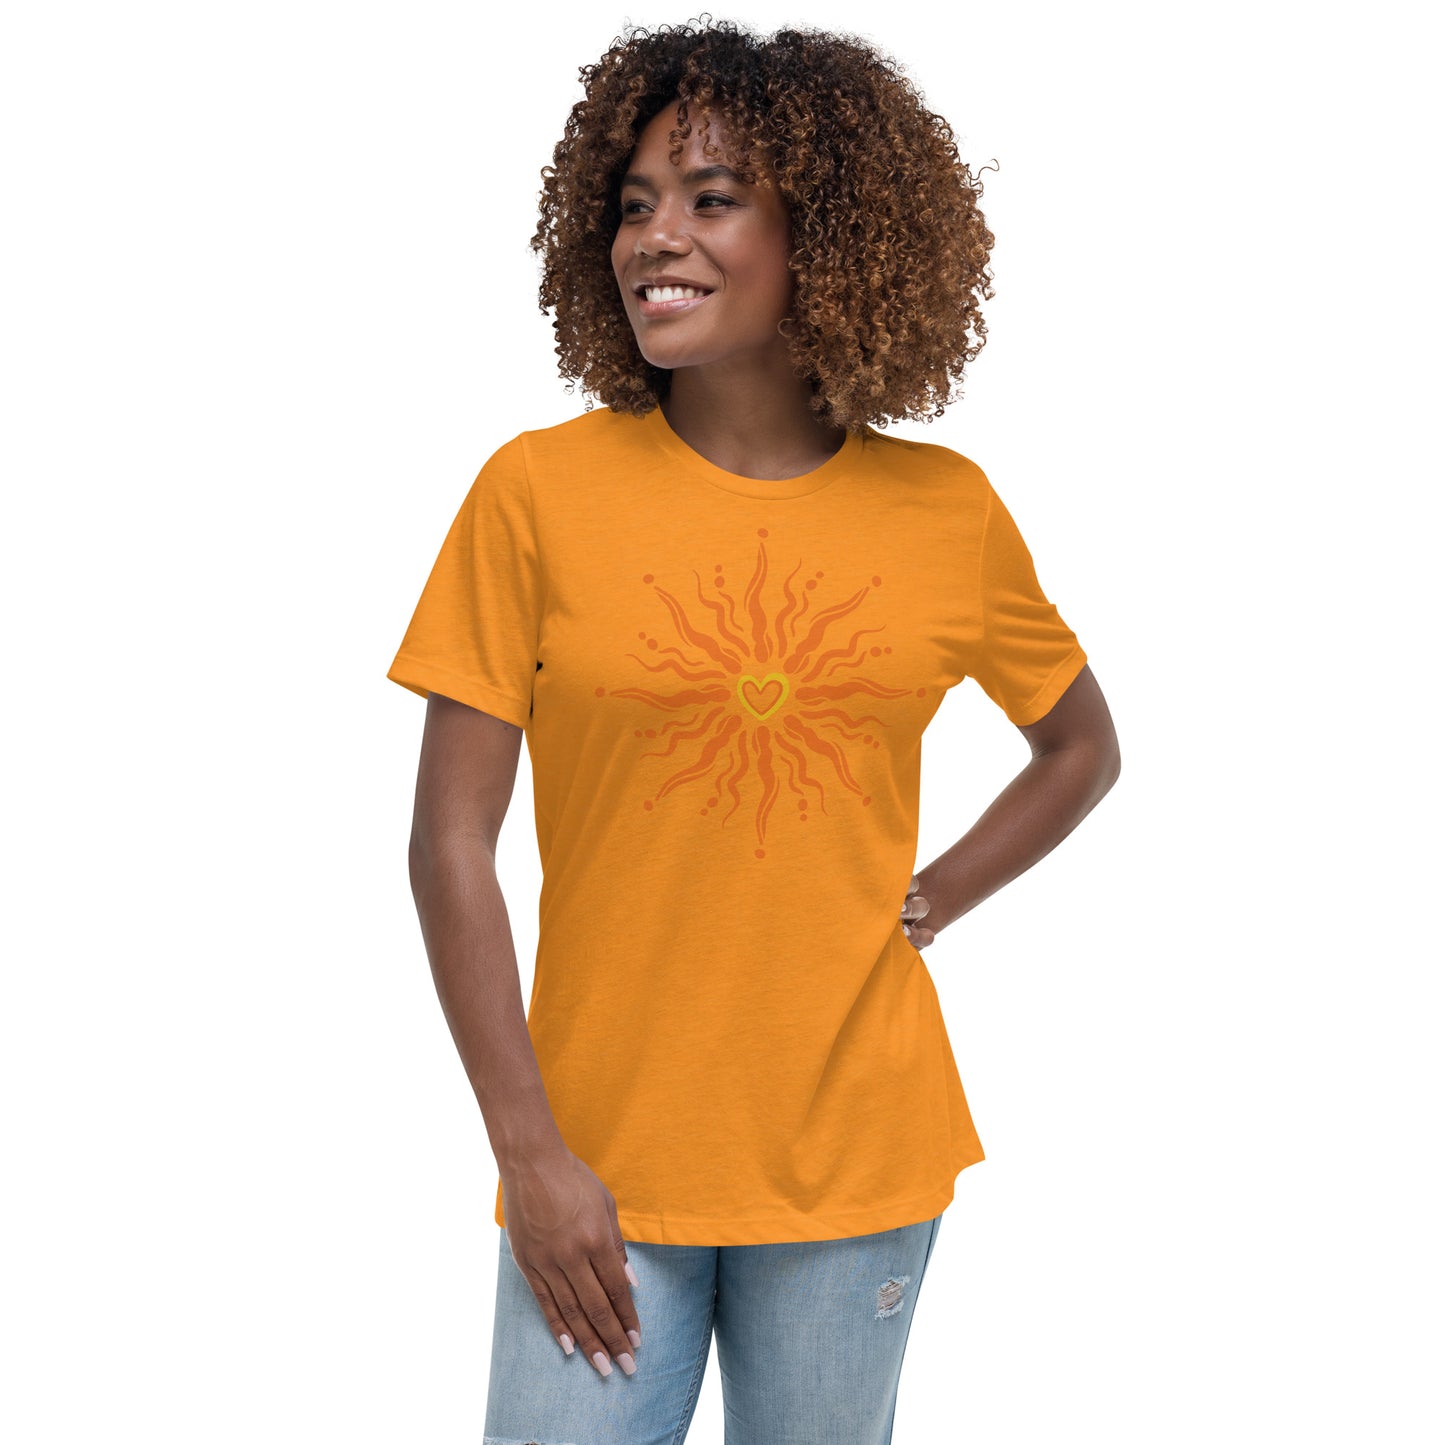 Sunshine Heart Women's Relaxed Fit T-Shirt